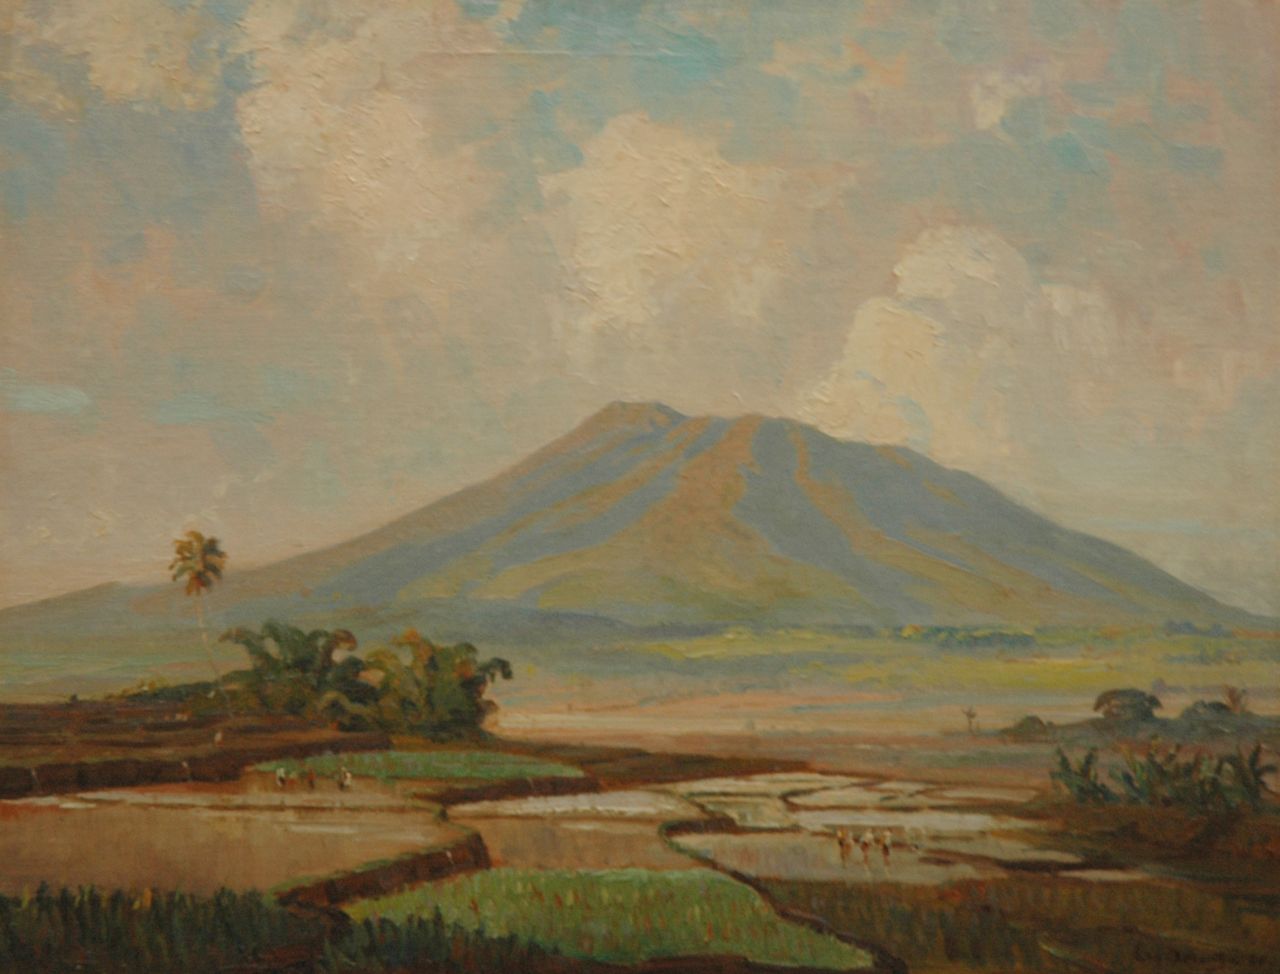 Dezentjé E.  | Ernest Dezentjé, Arbeiders in de rijstvelden aan de voet van een vulkaan, olieverf op doek op board 46,9 x 60,5 cm, gesigneerd rechtsonder en gedateerd '28